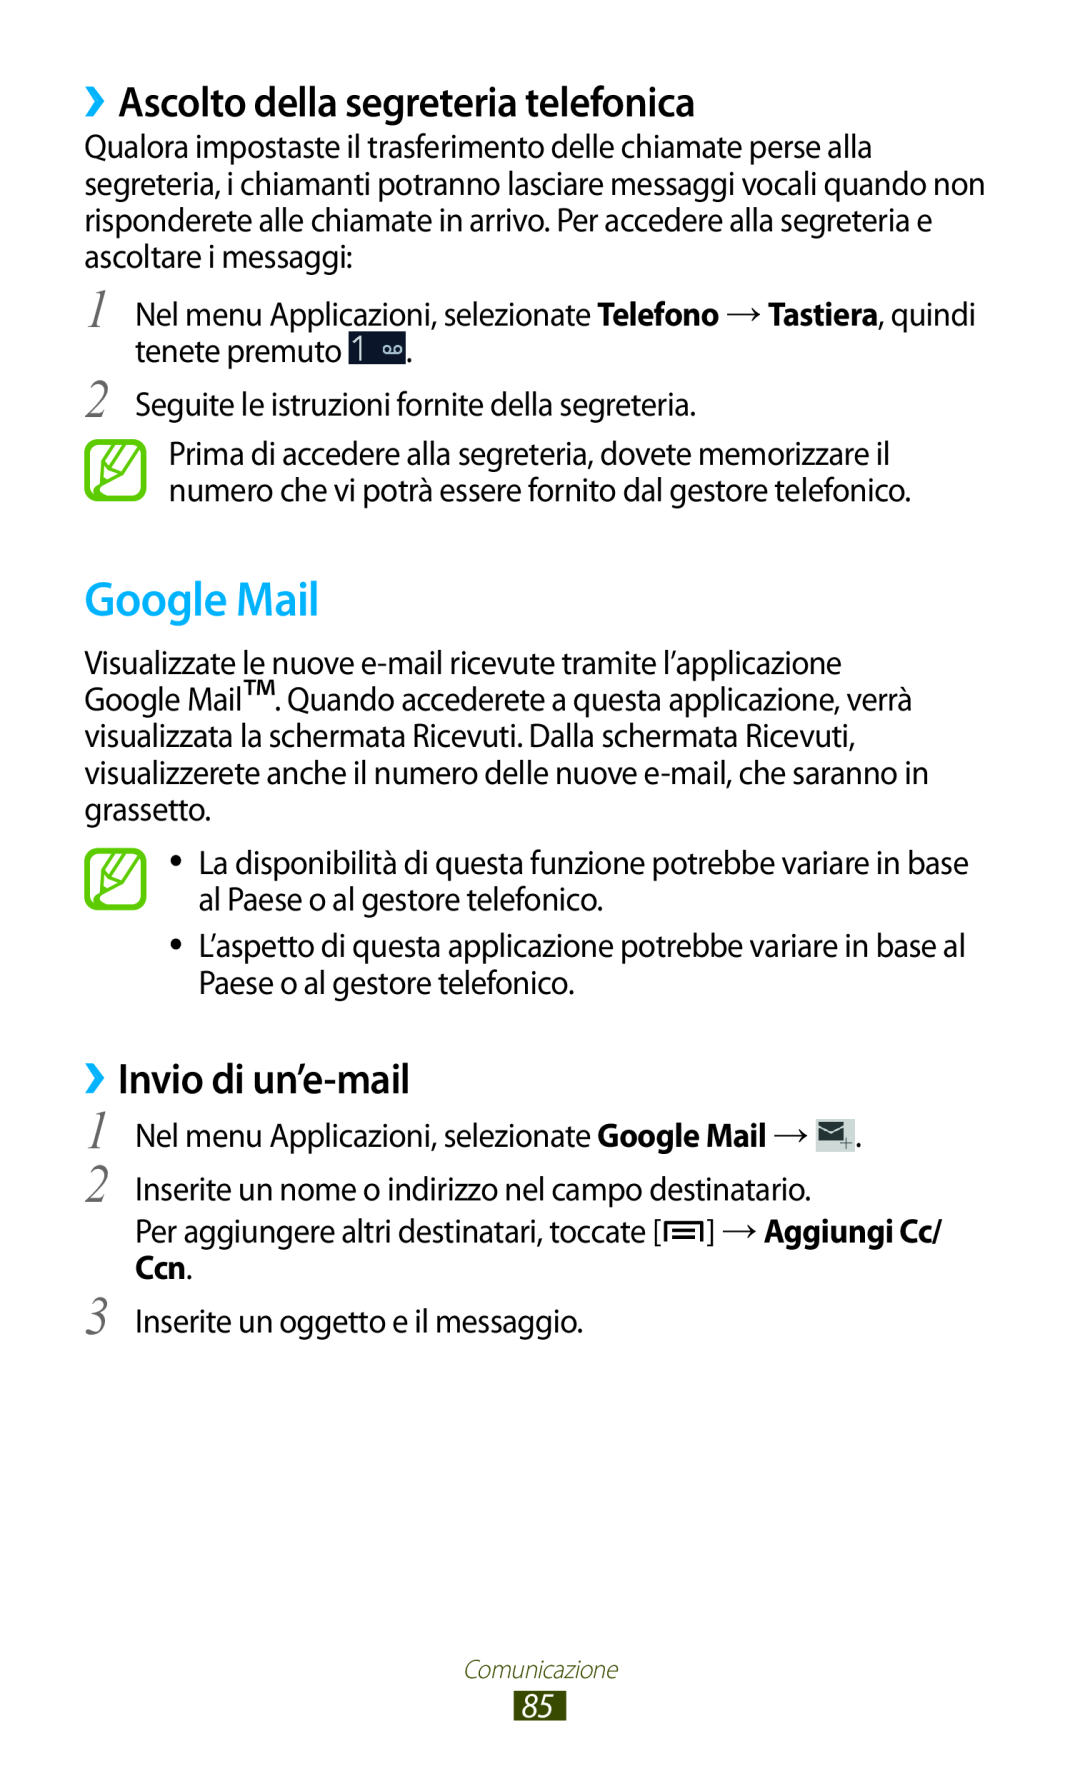 Samsung GT-N7000RWAOMN, GT-N7000ZBAXEO manual Google Mail, ››Ascolto della segreteria telefonica, ››Invio di un’e-mail 